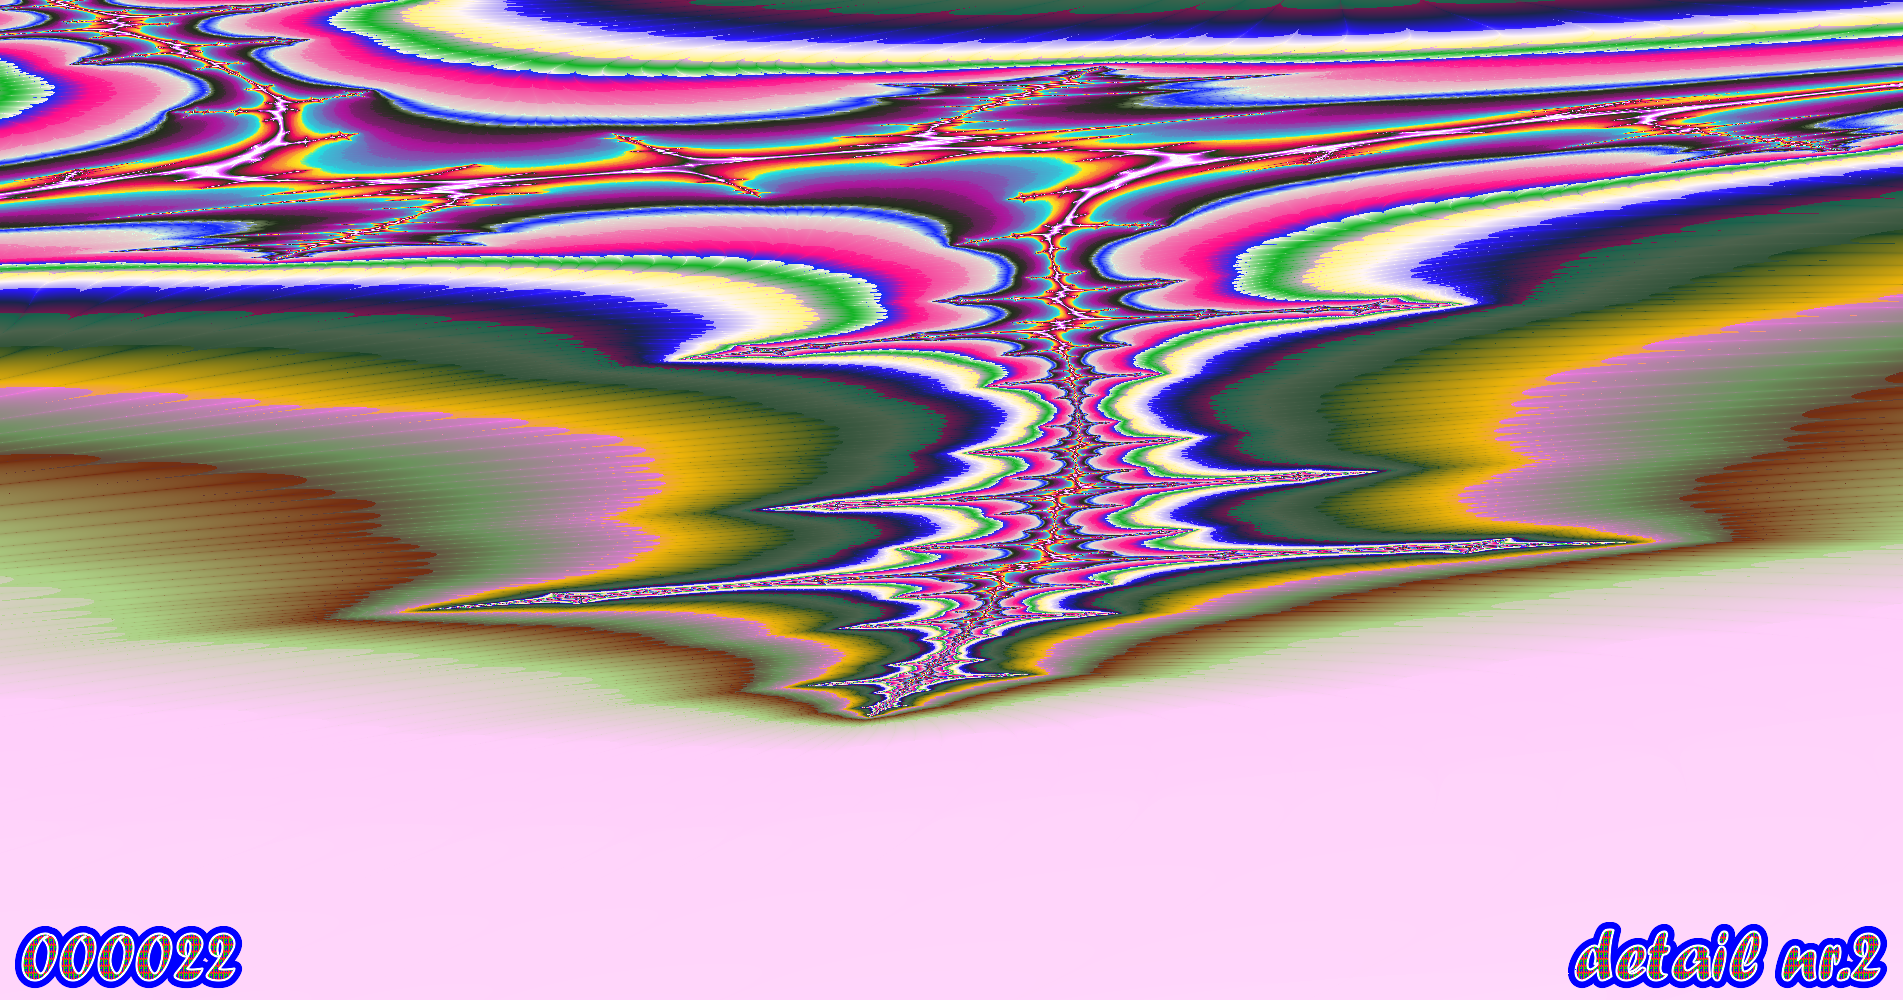 fractal kunst nr. 000022 ,detail nr. 2